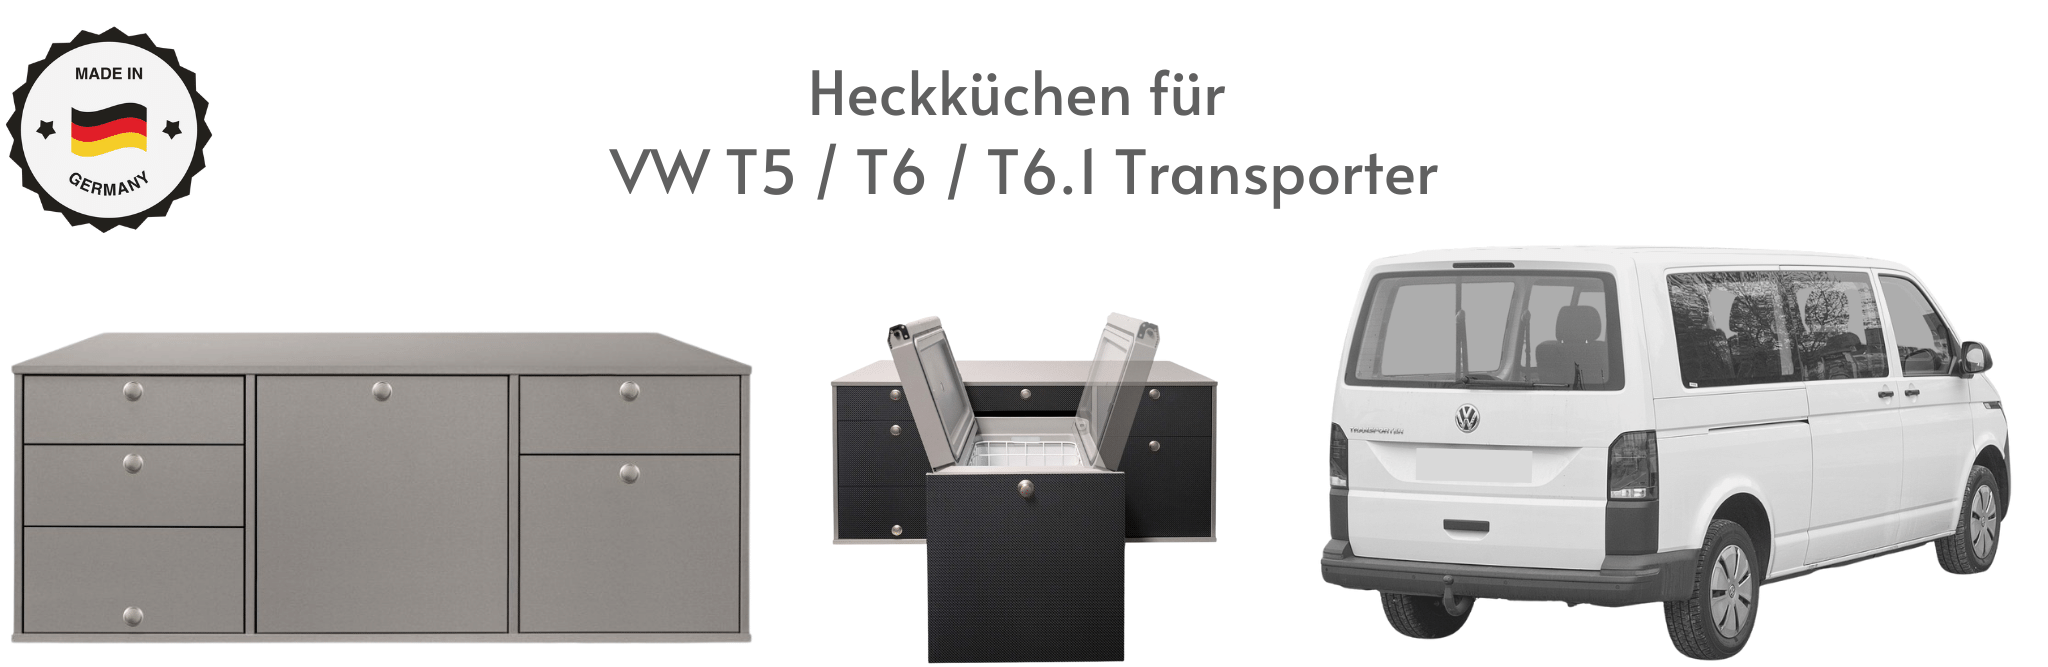 Camping Heckküchen für VW T5 / T6 / T6.1 Transporter